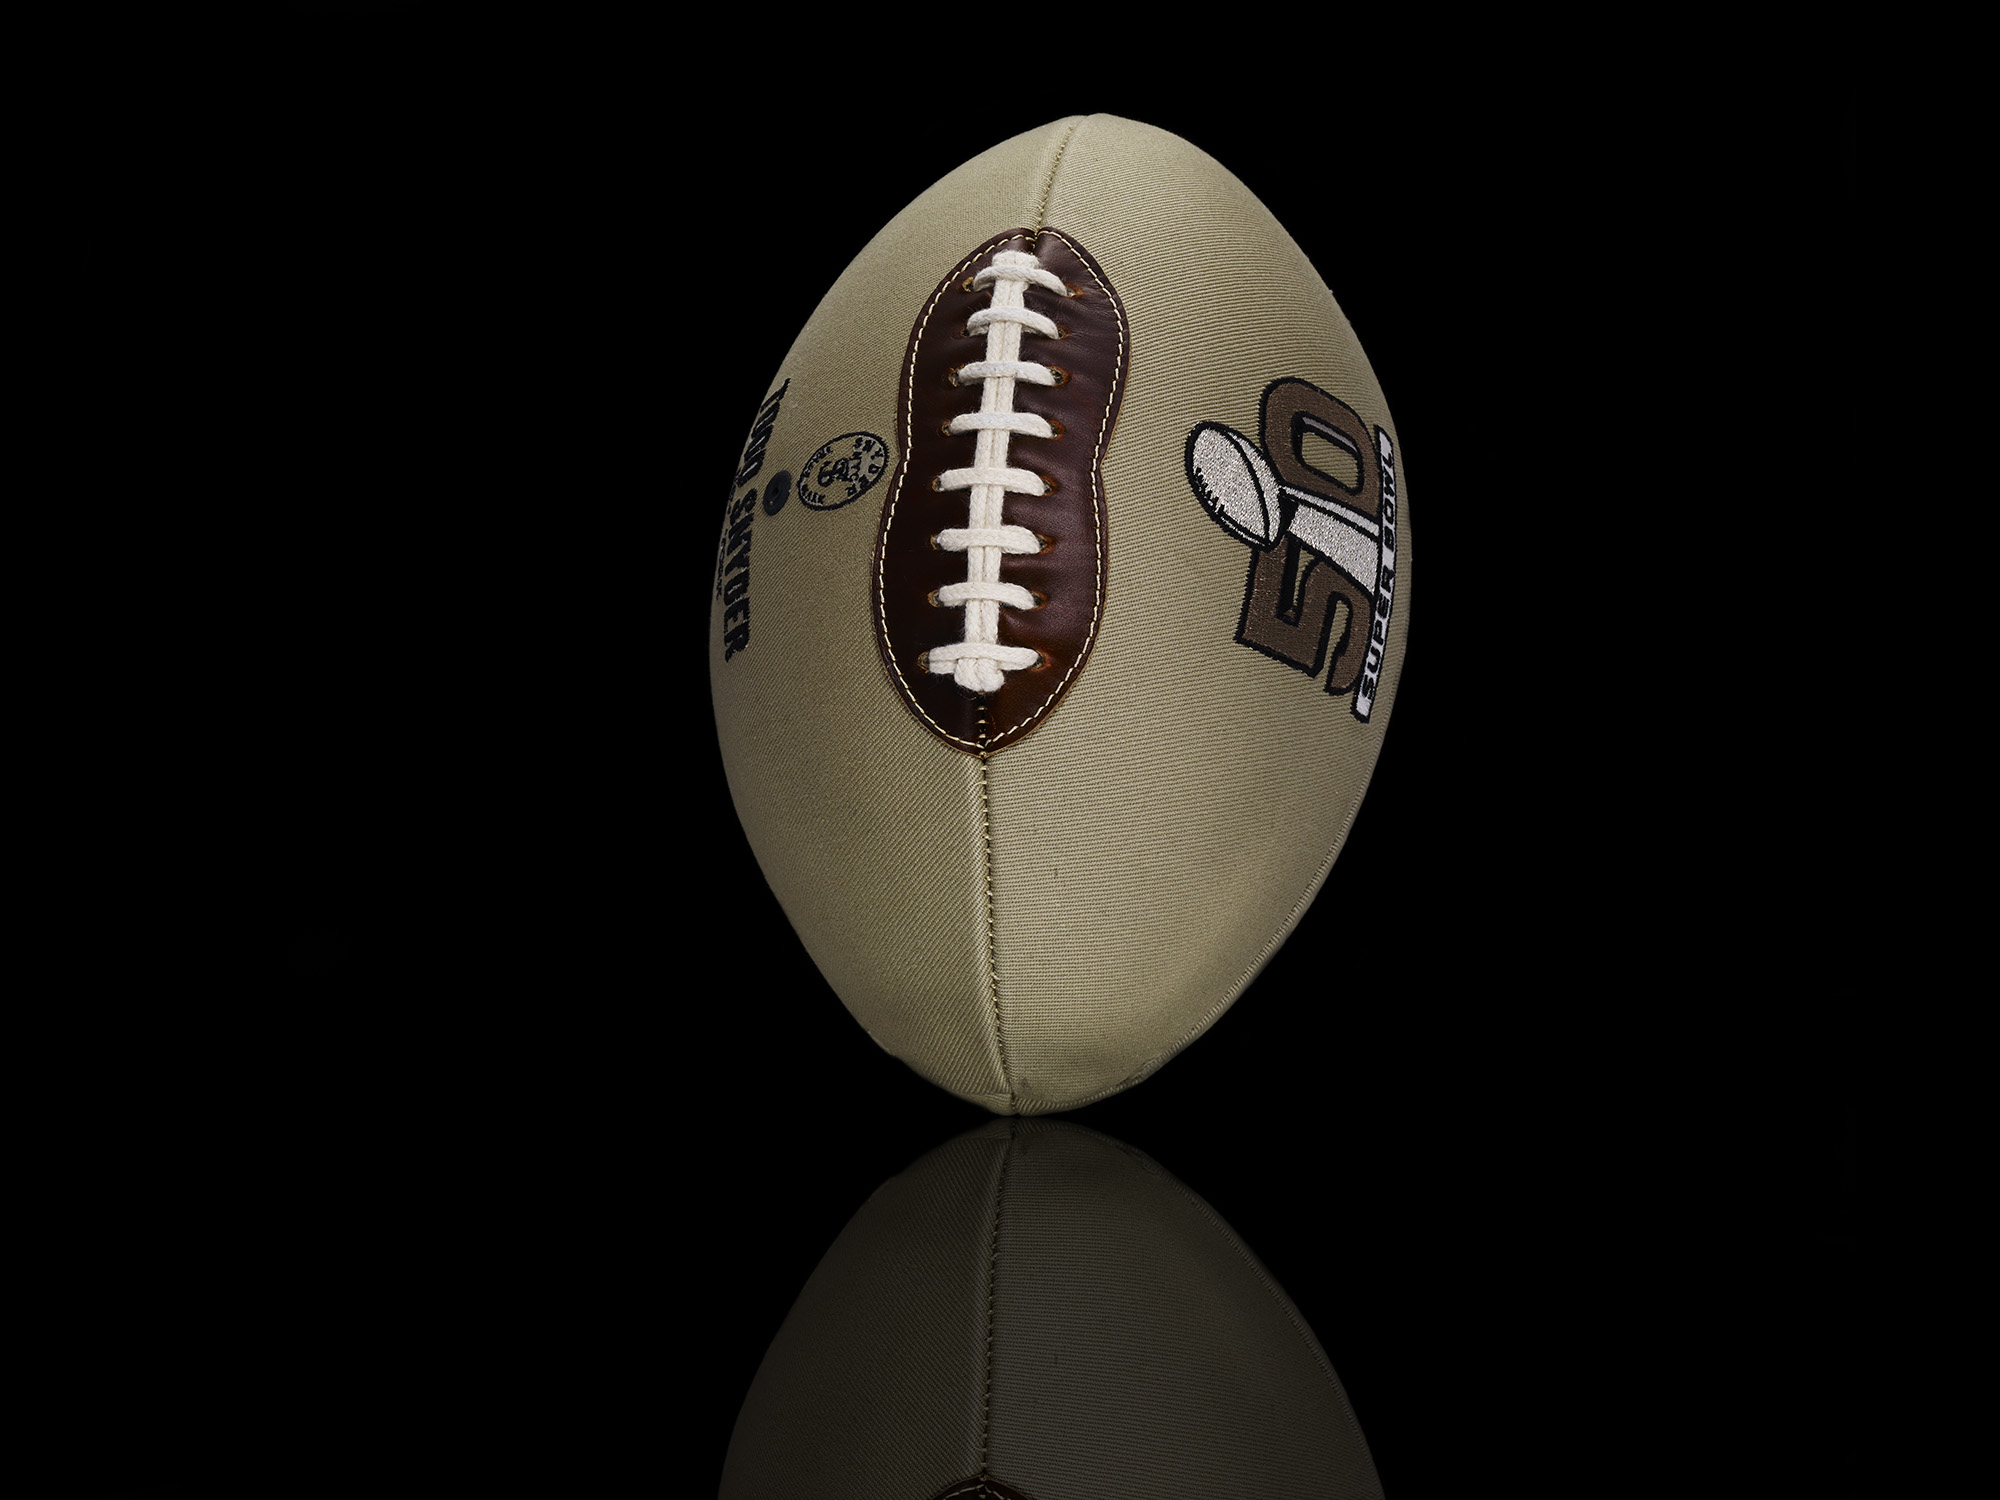 Super Bowl 50 bespoke designer footballs designed by noted fashion designers